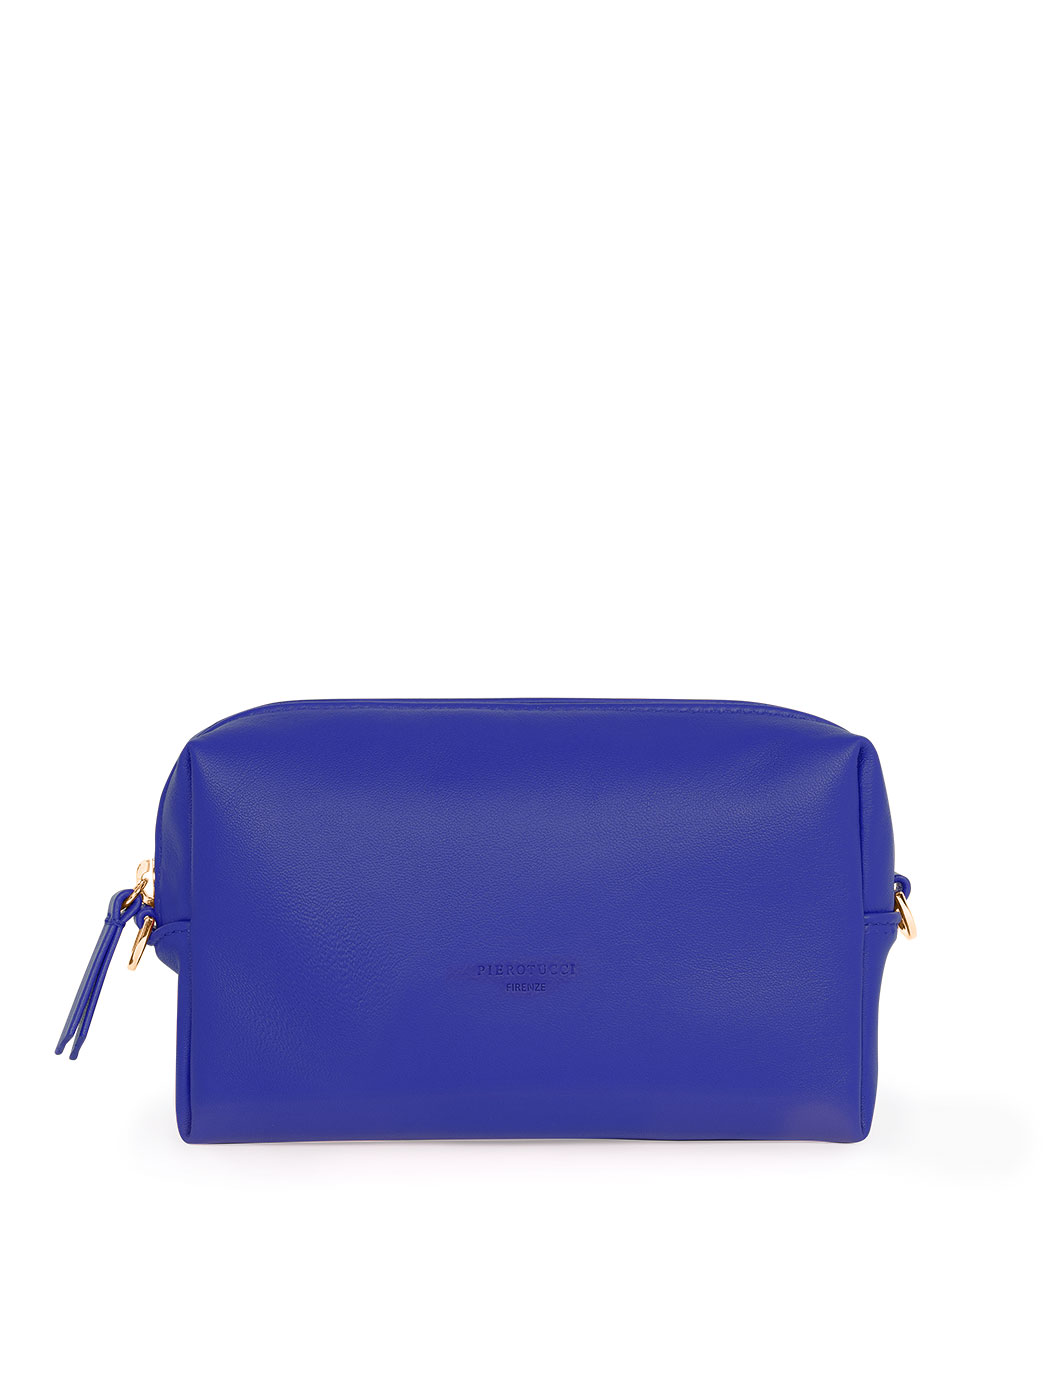 Прямоугольная сумочка с регулируемым ремнем темно - синего цвета